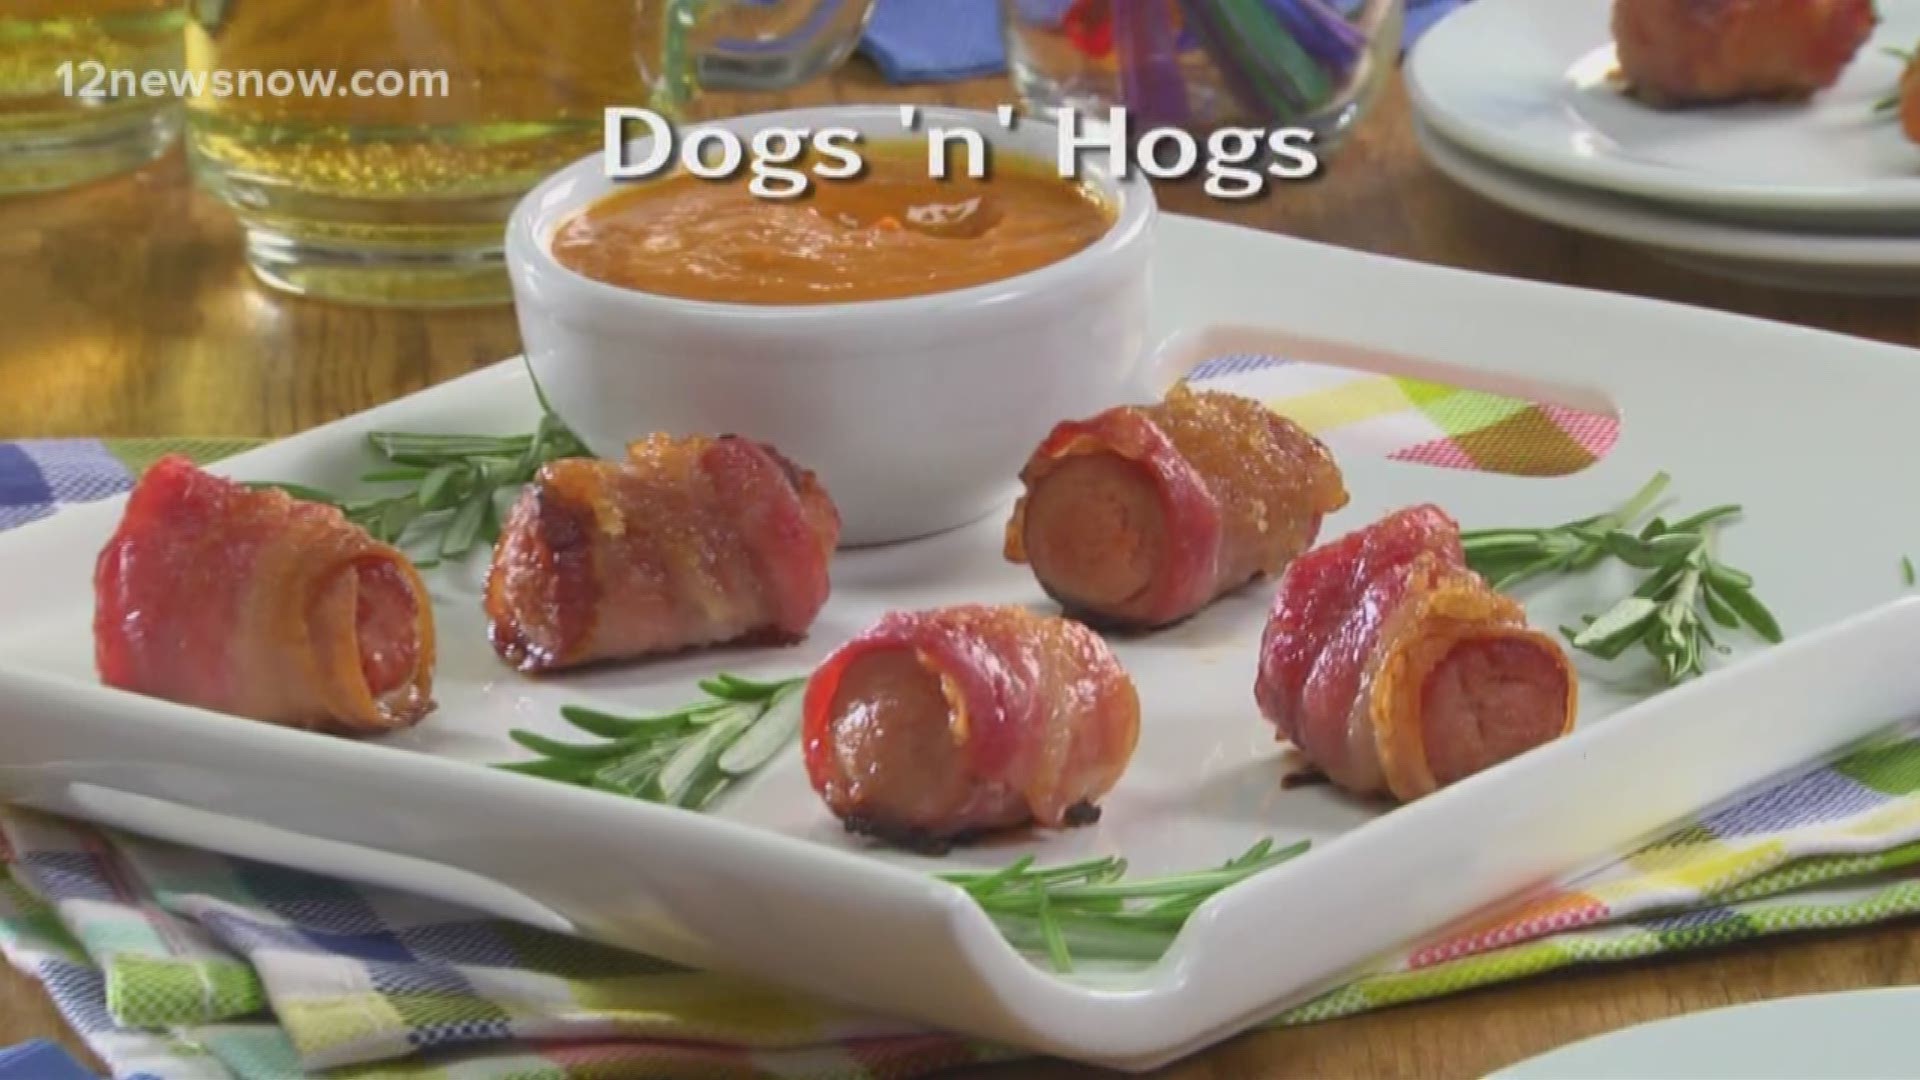 Mr. Food makes Dogs 'n' Hogs